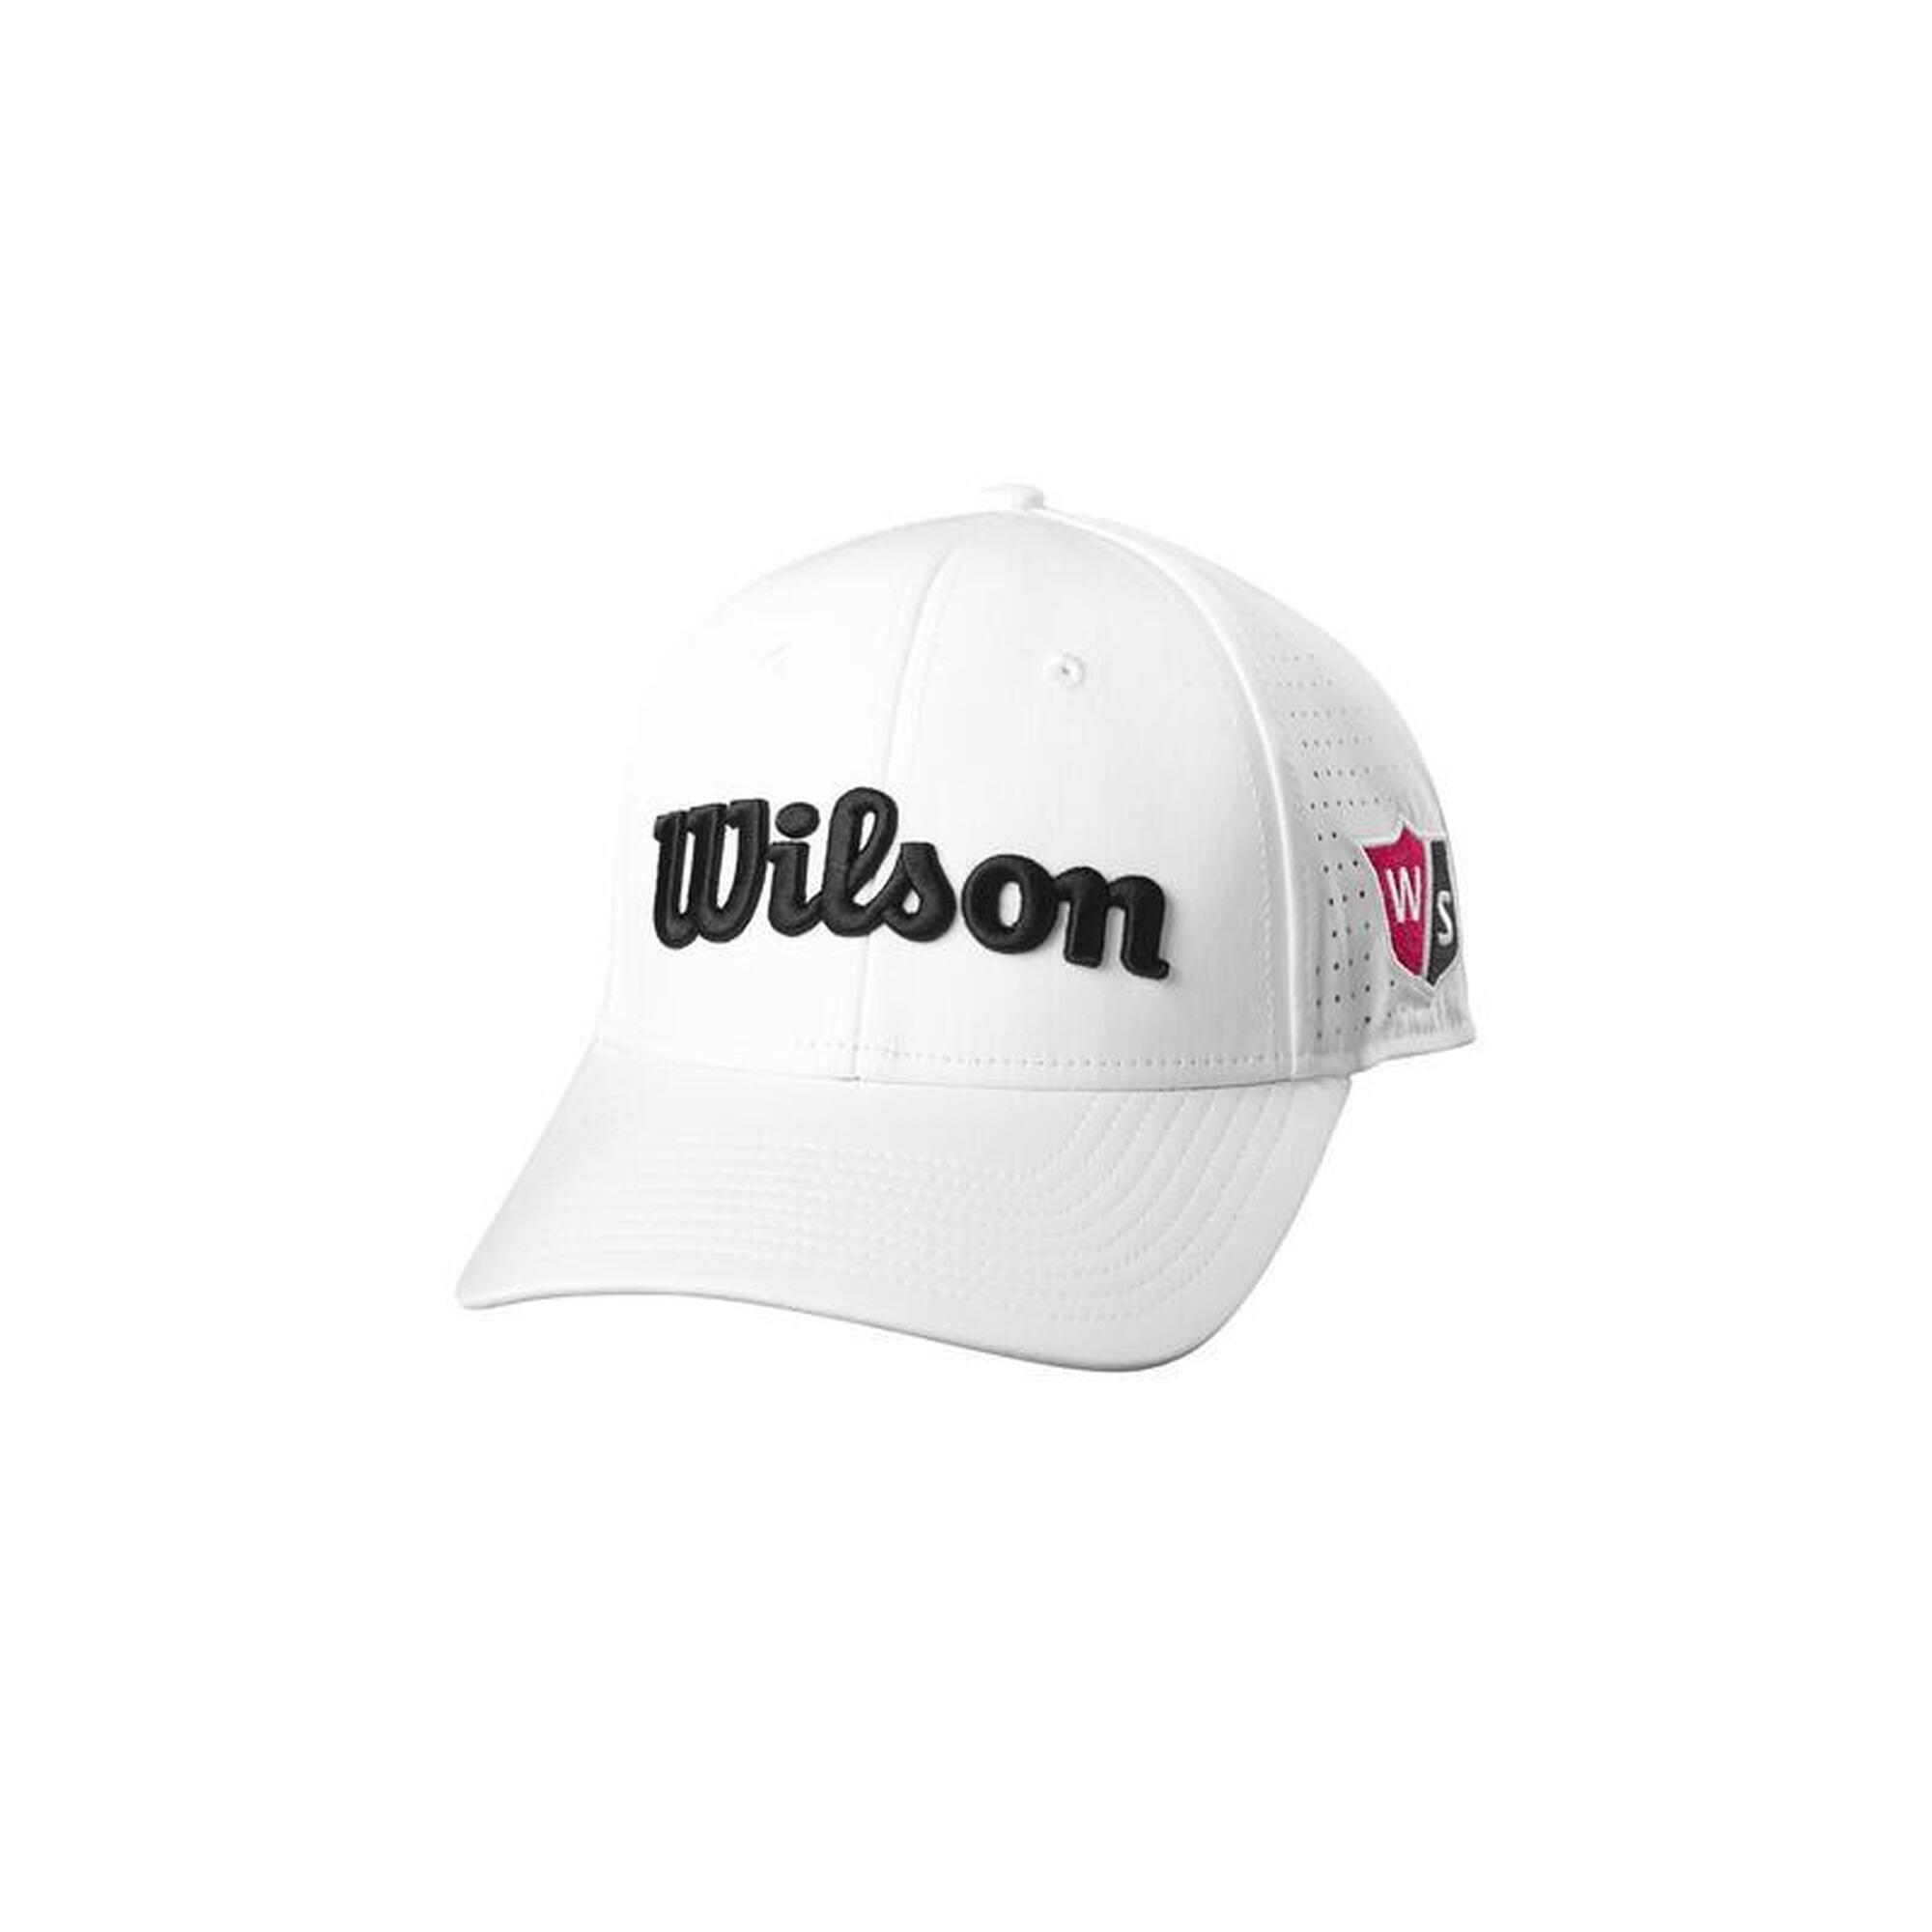 WILSON Casquette de golf   Staff Mesh  Blanc